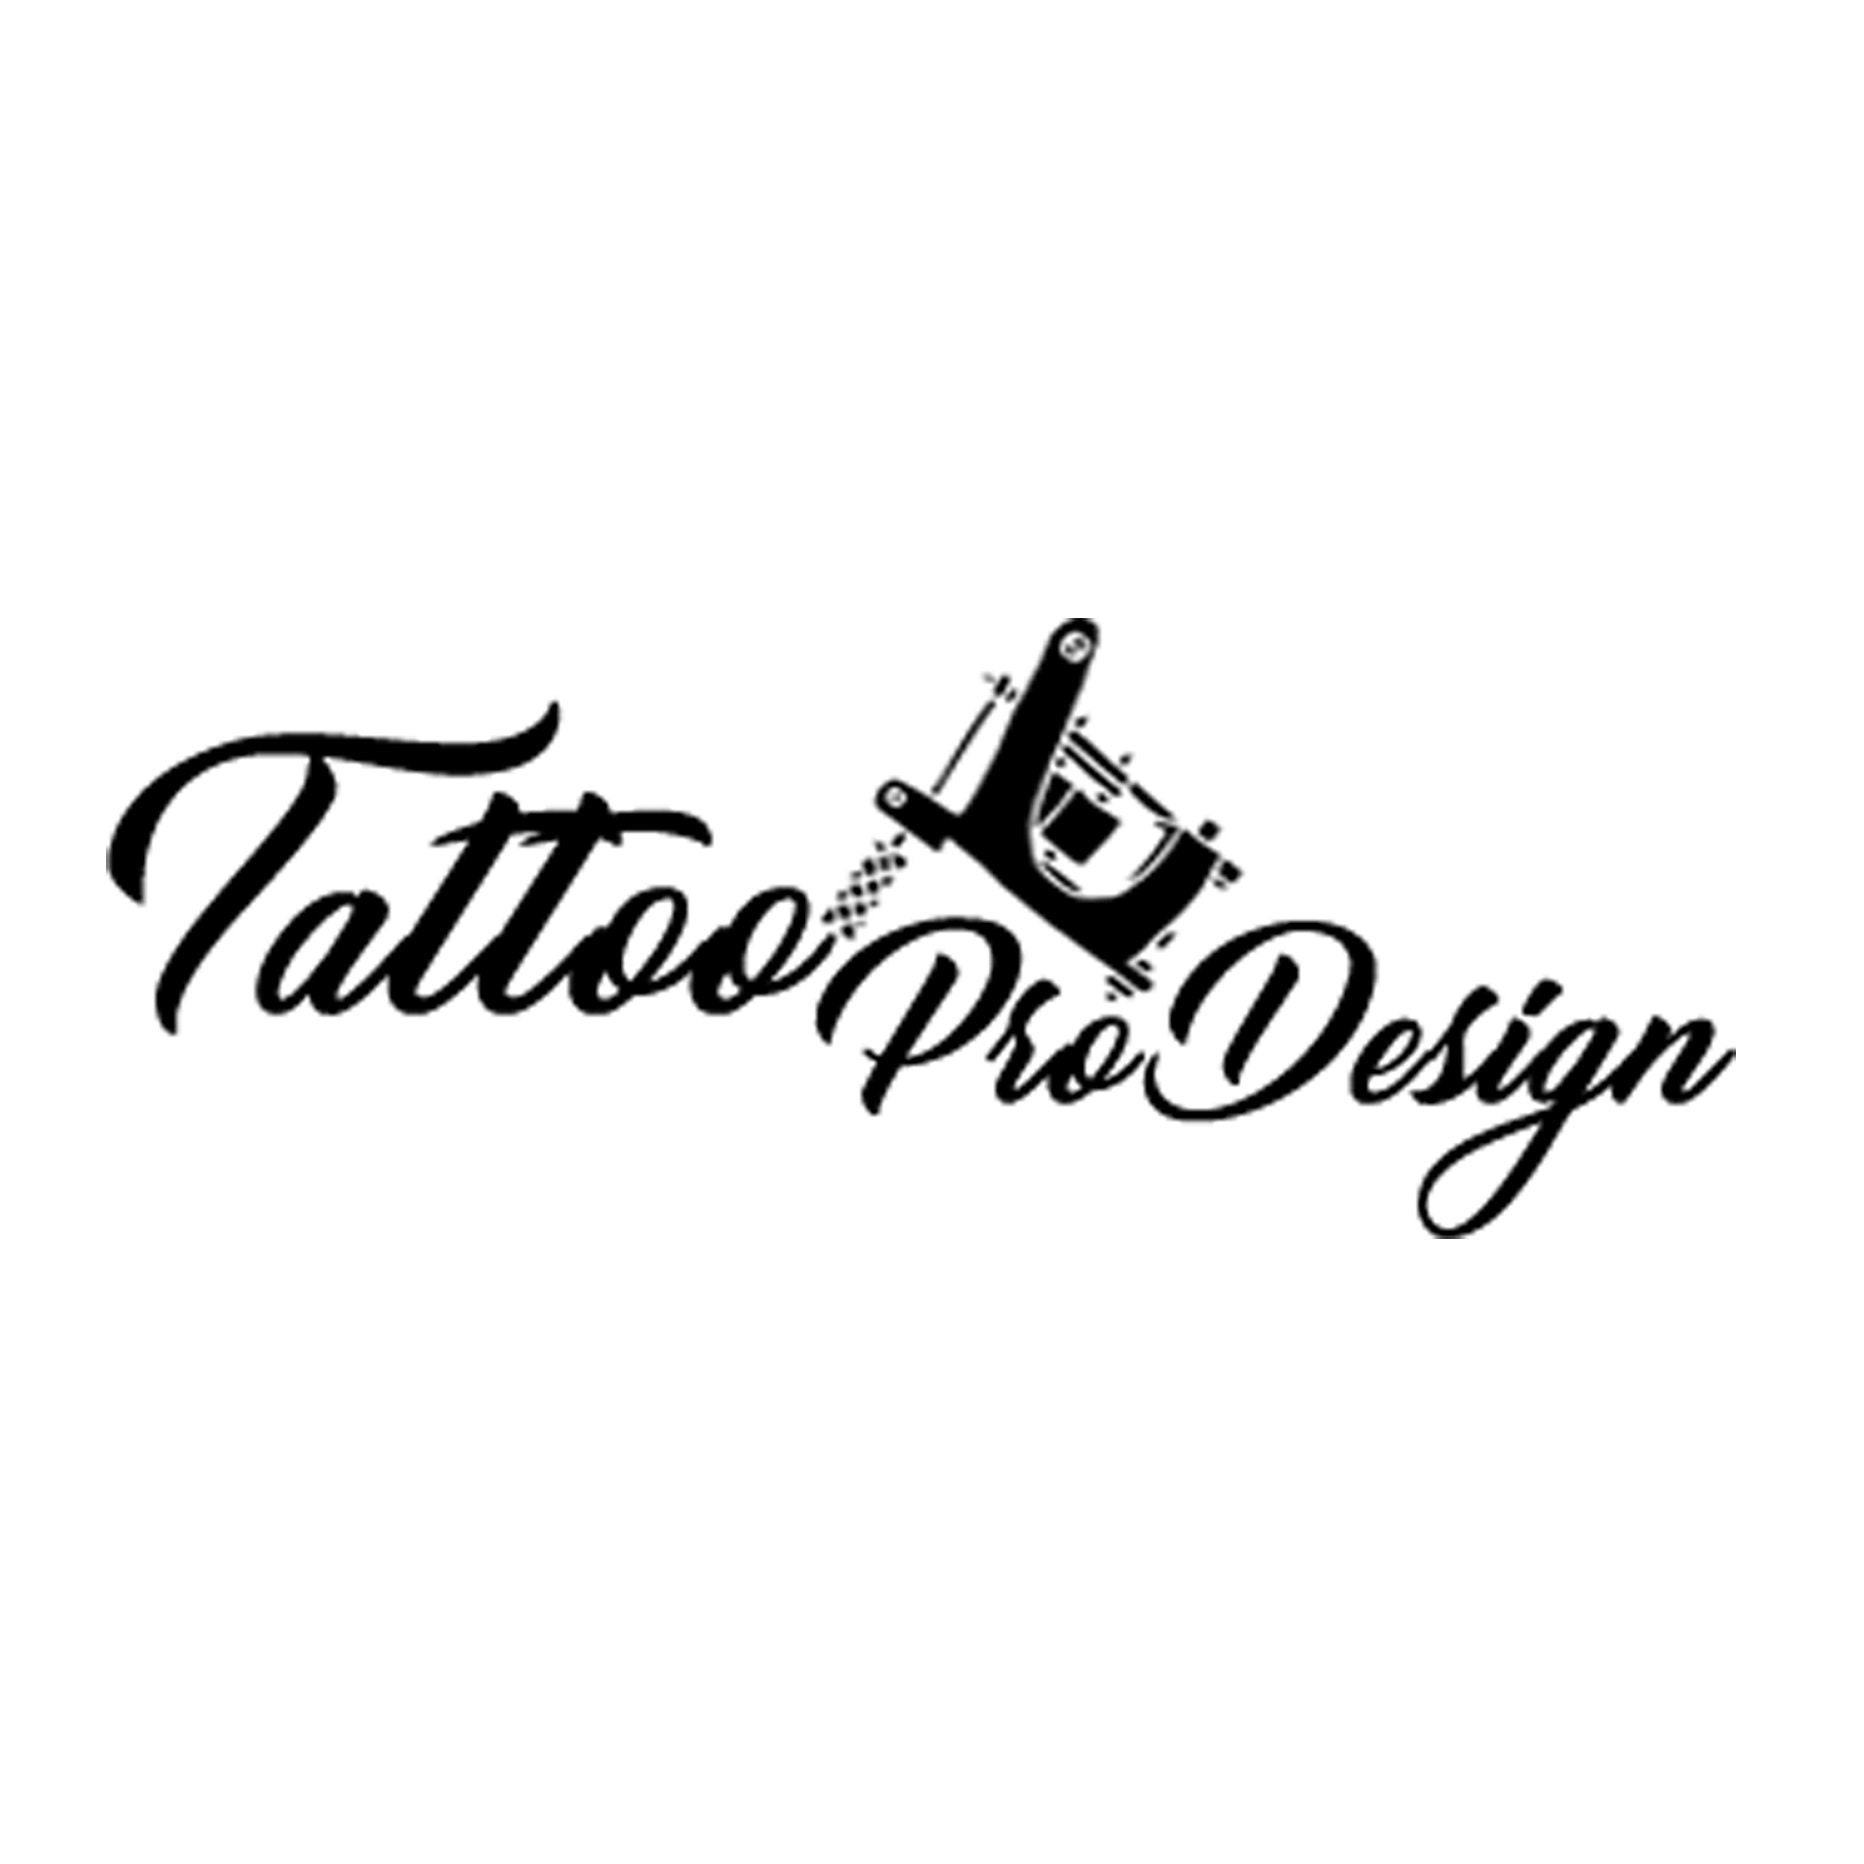 TattooProDesign - Etsy